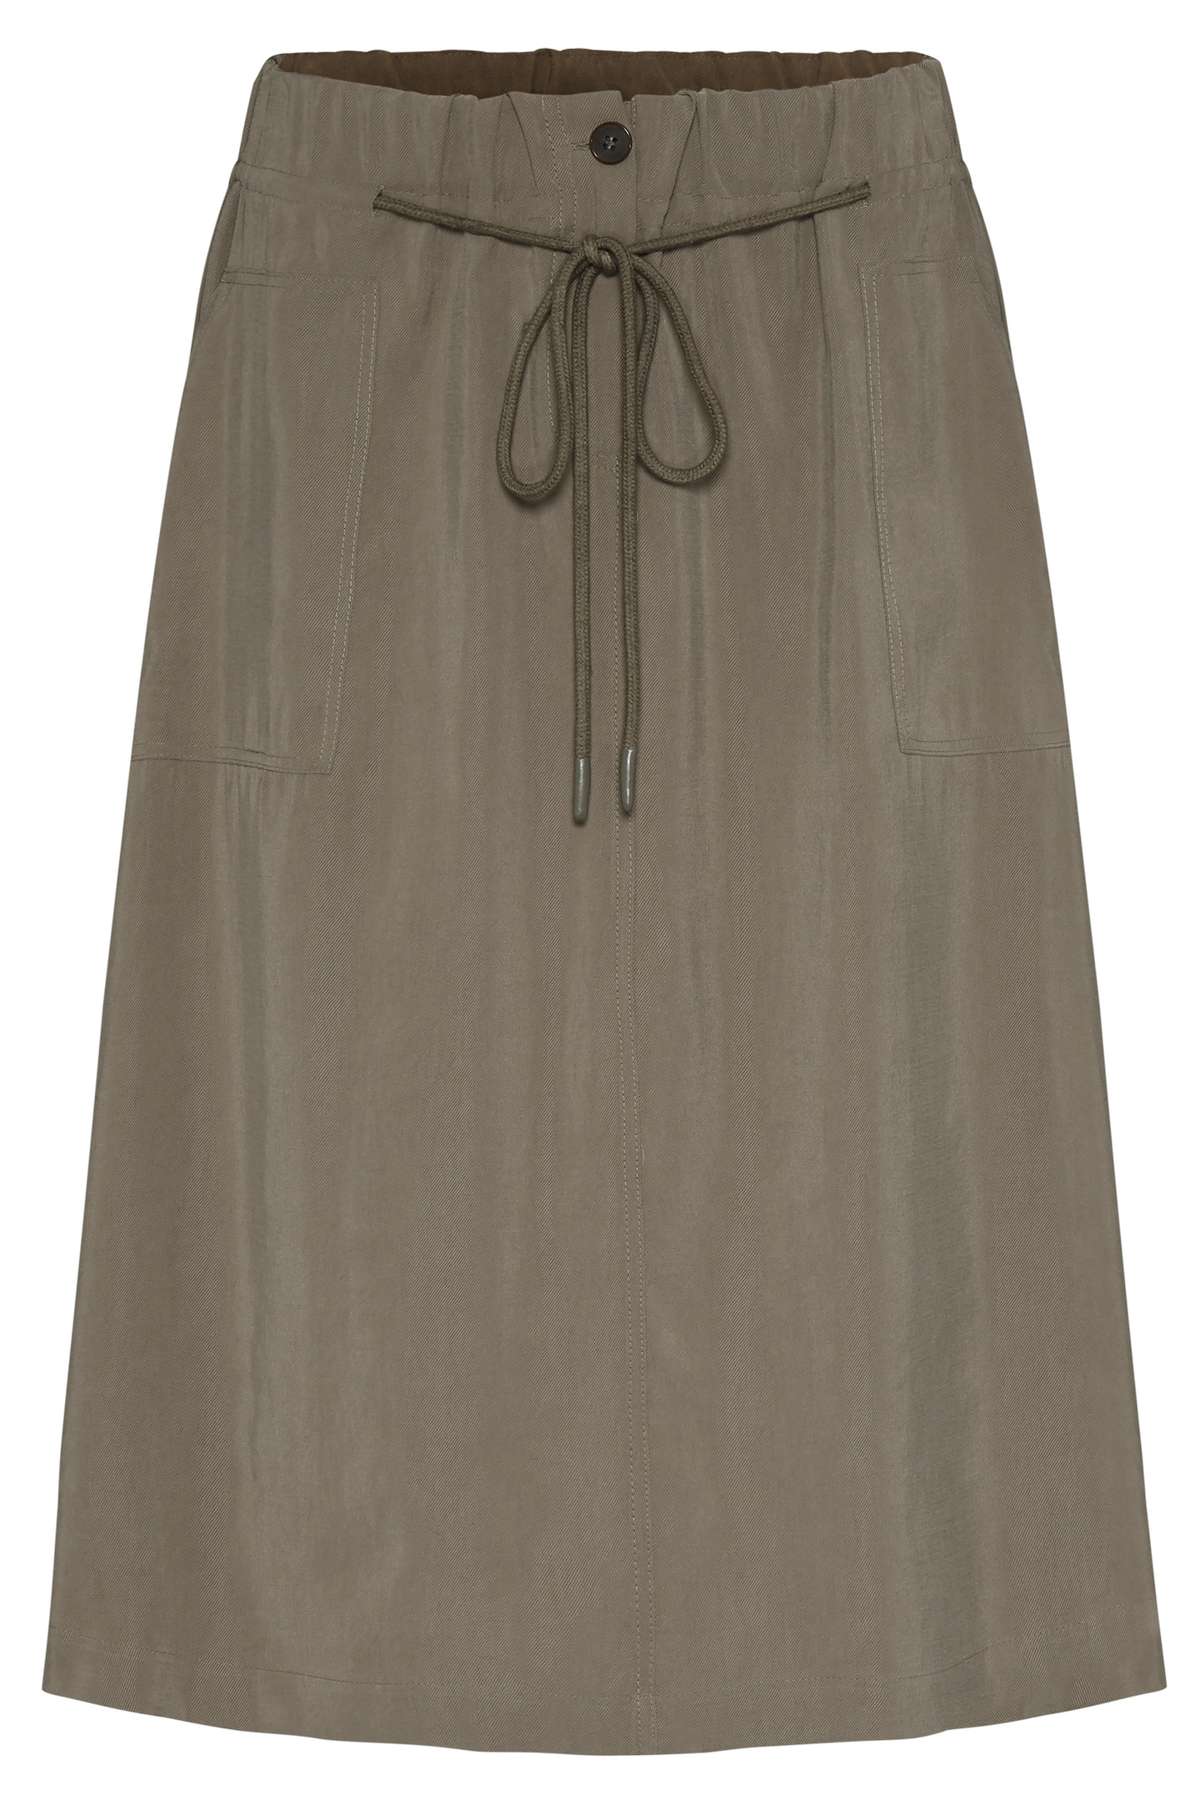 Плиссированная юбка с эластичным поясом на кулиске.